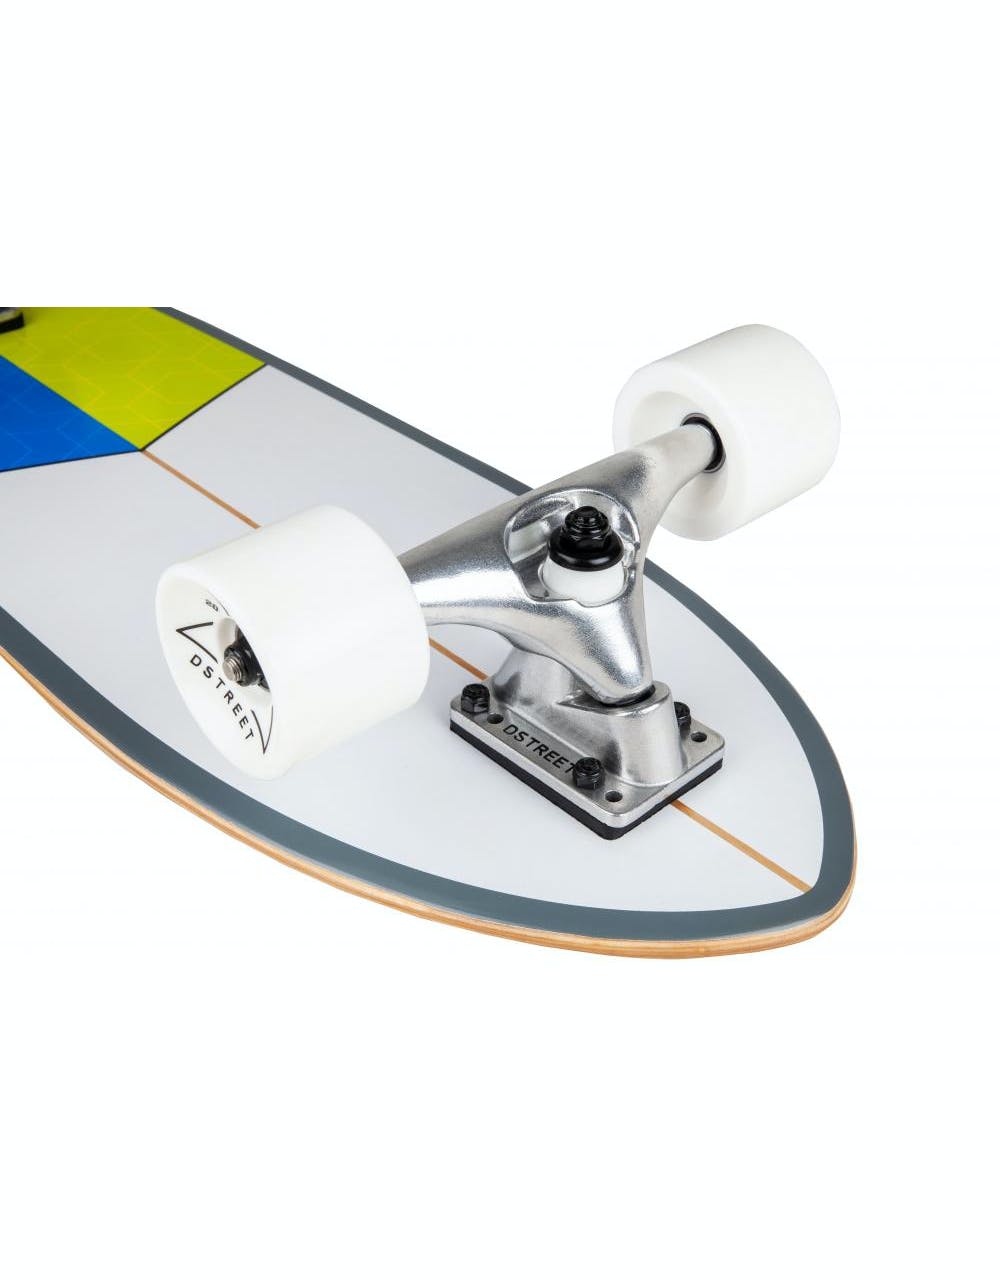 D Street Tidal Surfskate Cruiser - 9.25" x 29.875"